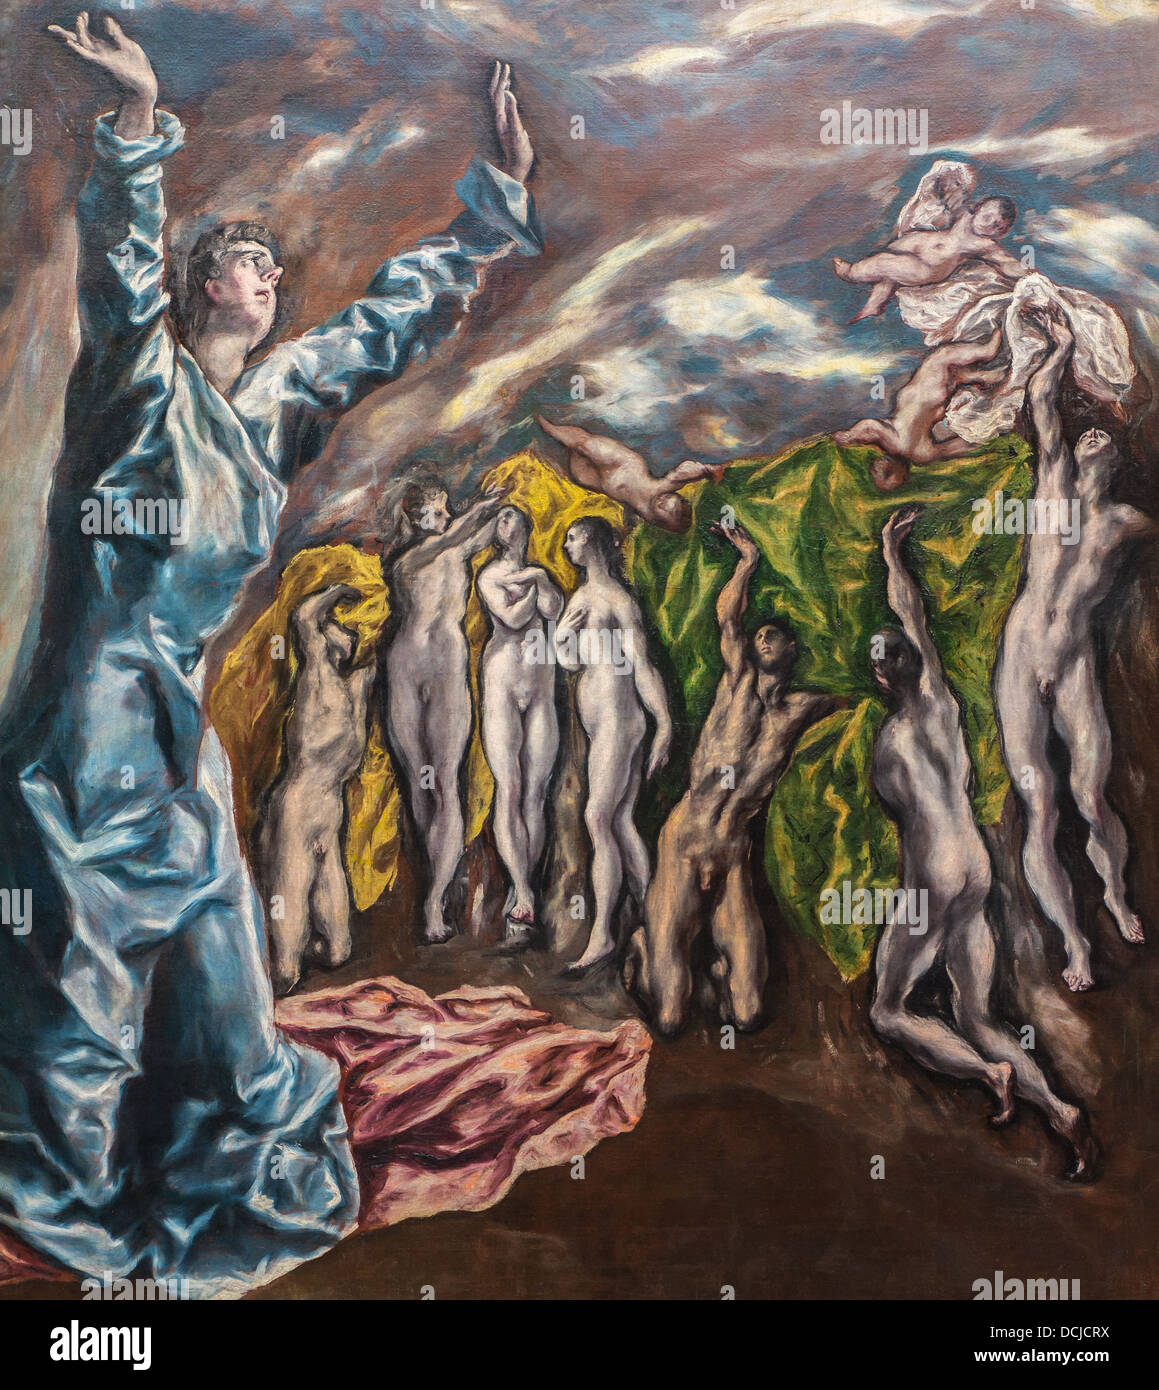 Siglo 17 - La visión de san Juan, 1608 - El Greco Philippe Sauvan-Magnet / Museo Activo Foto de stock